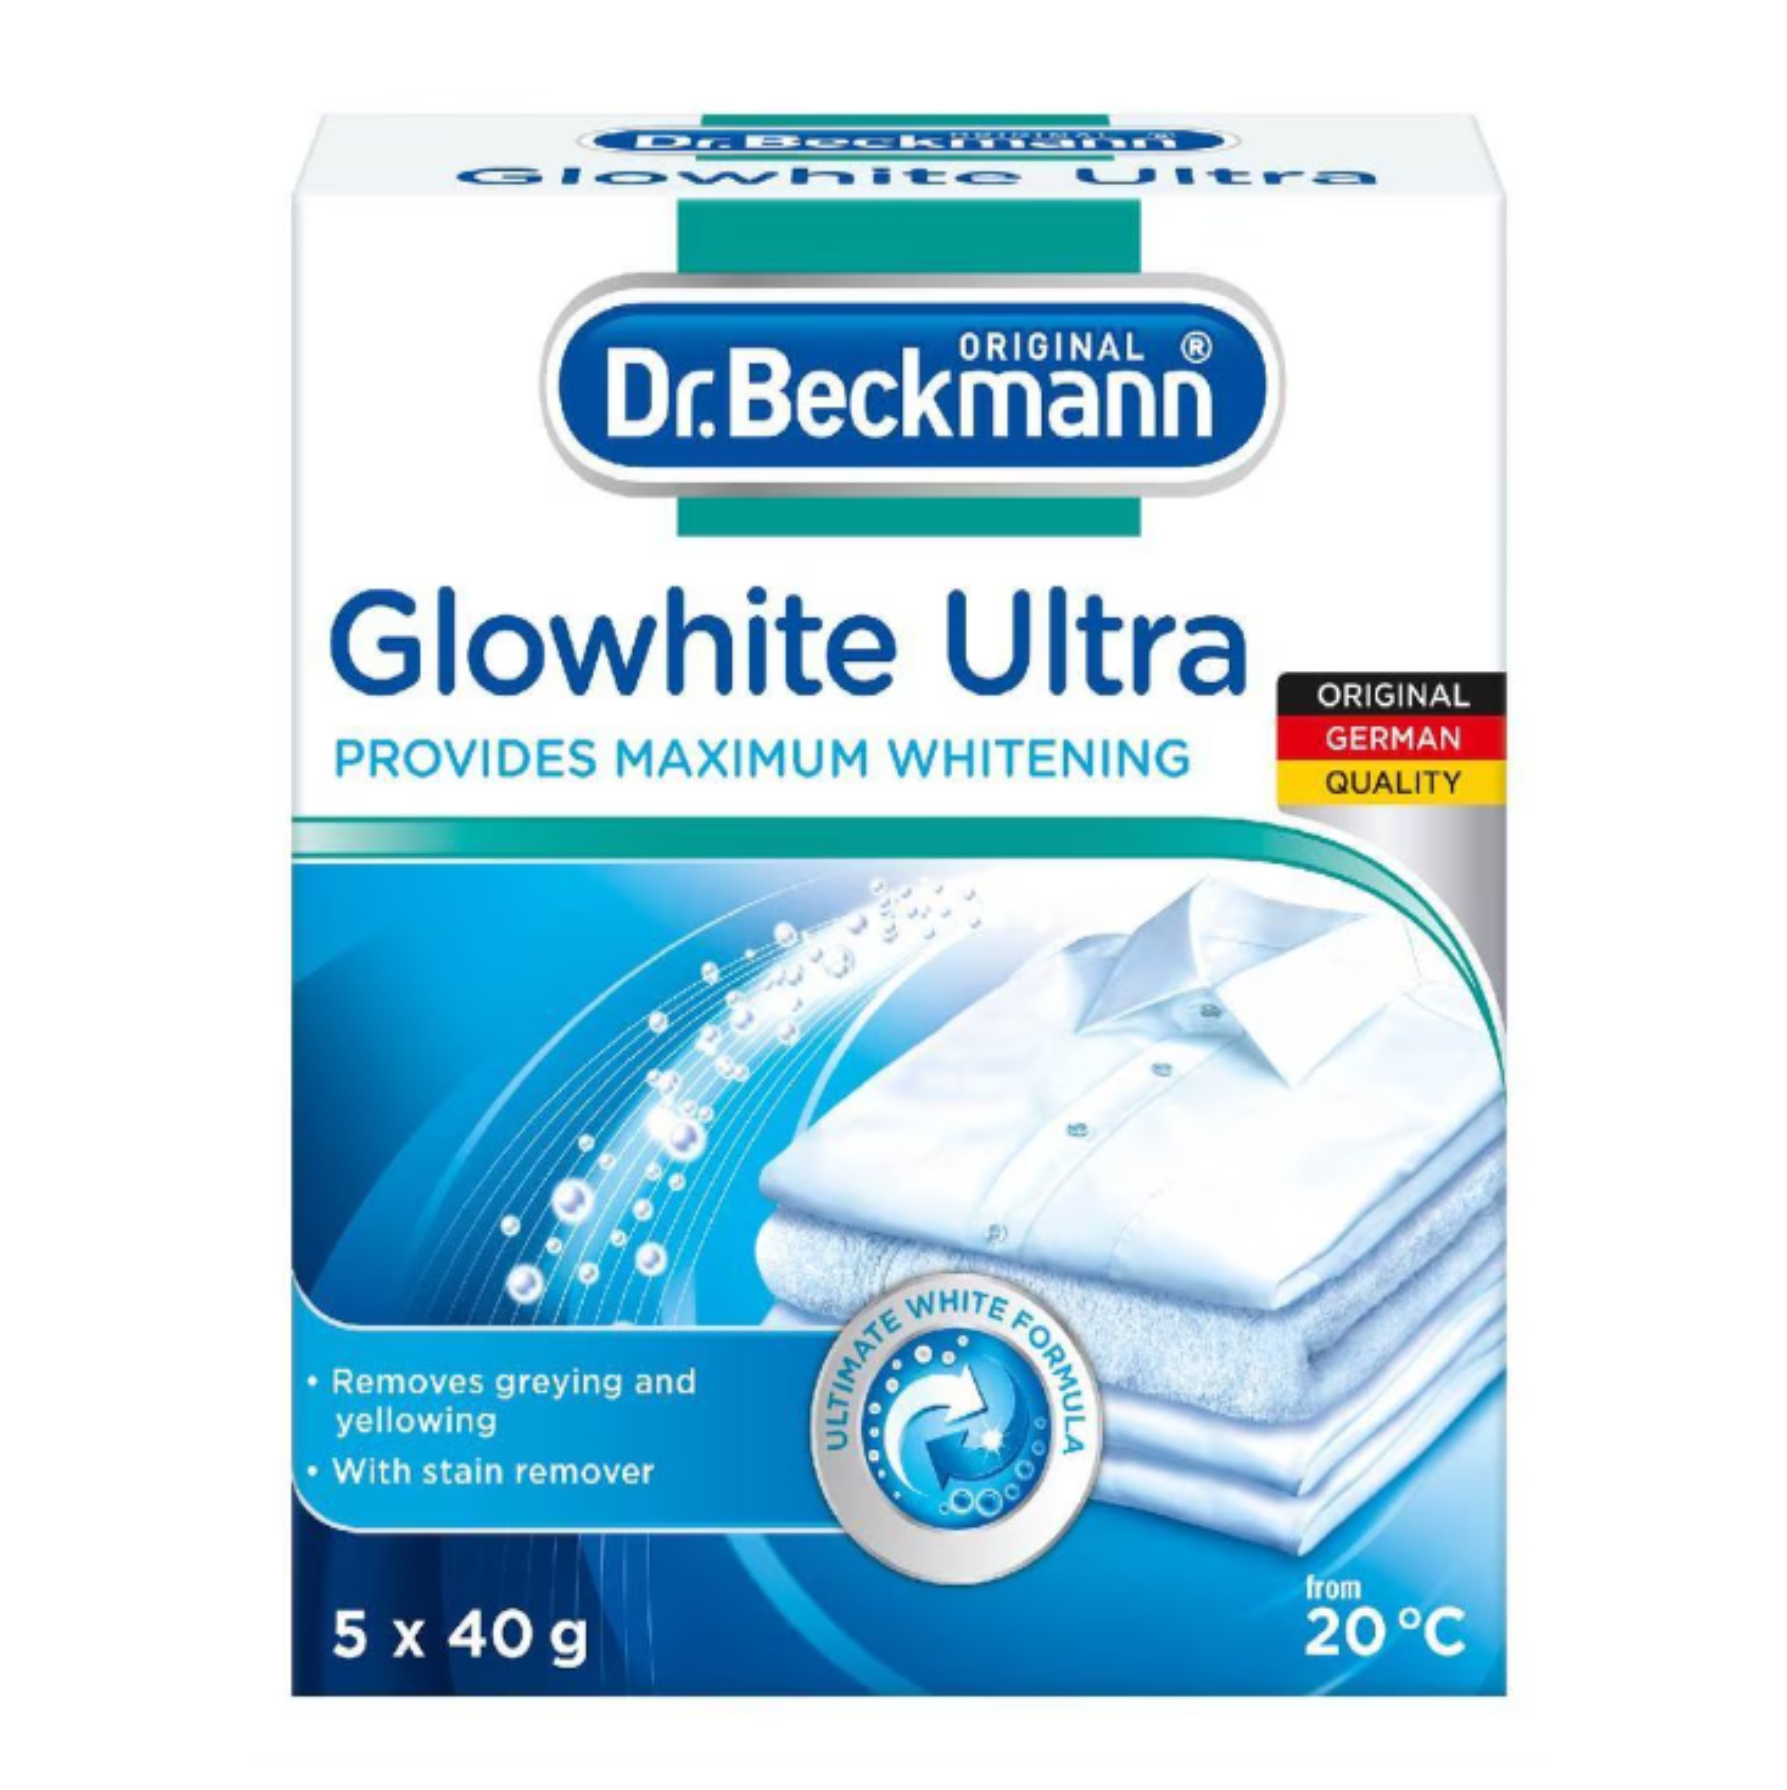 DR. BECKMANN GLOWHITE ULTRA Whitener 5 SHEETS X 40g